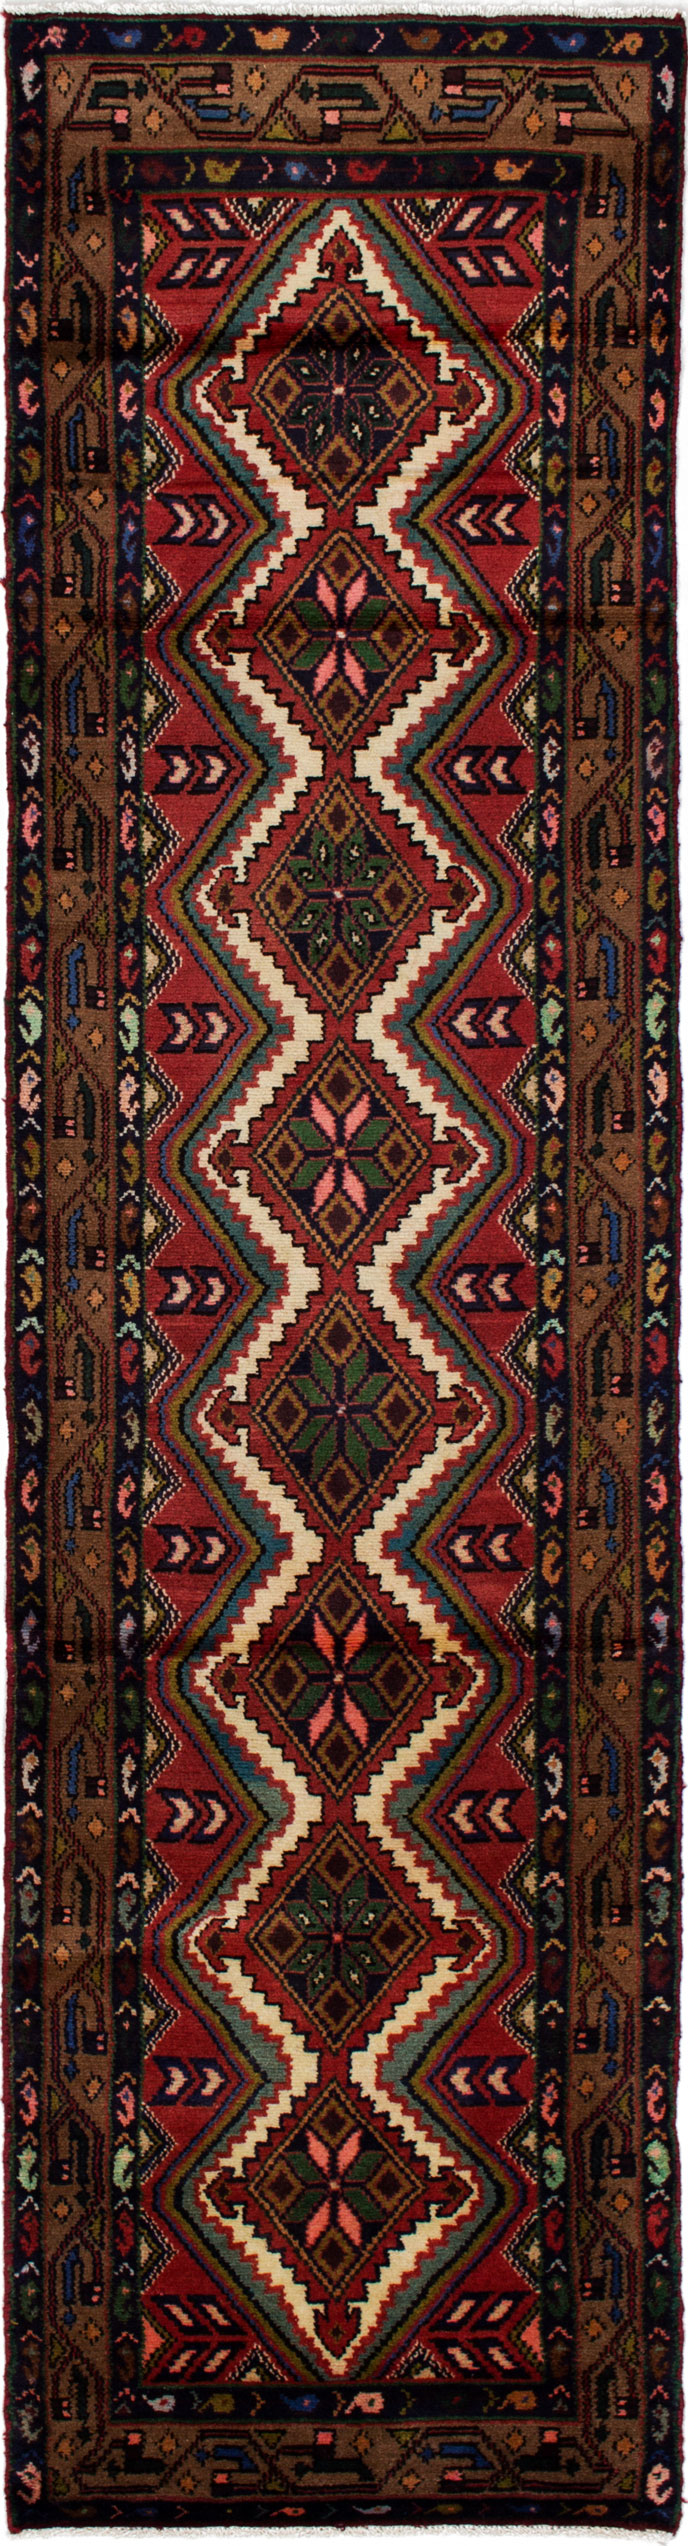 Hand-knotted Darjazin Brown, Dark Copper Wool Rug 2'6" x 9'10" Size: 2'6" x 9'10"  